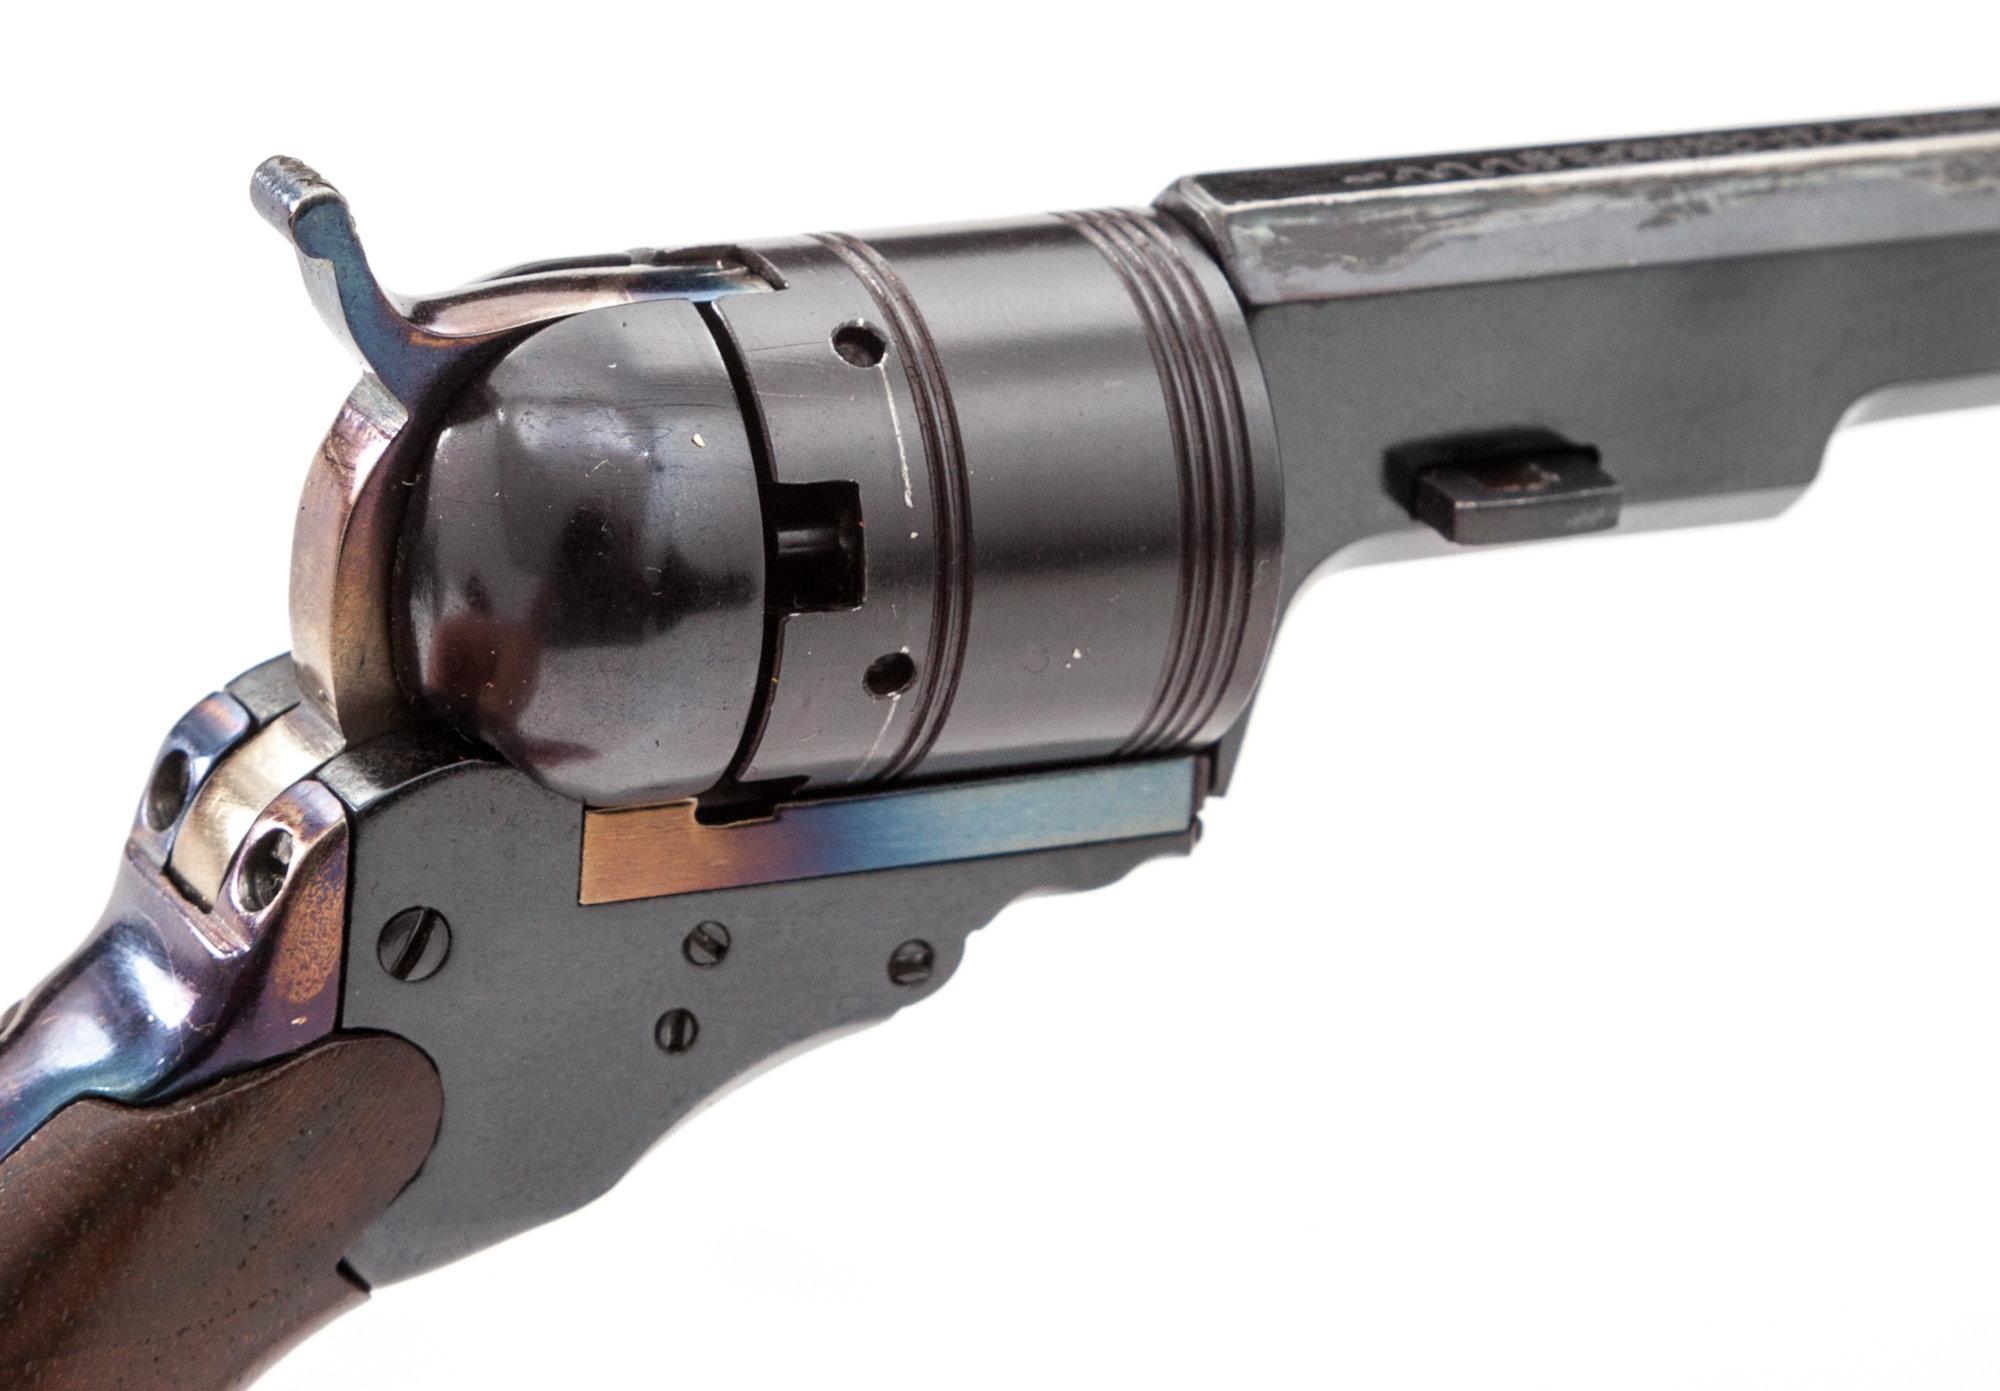 Half-Scale Miniature Colt Texas Paterson Revolver